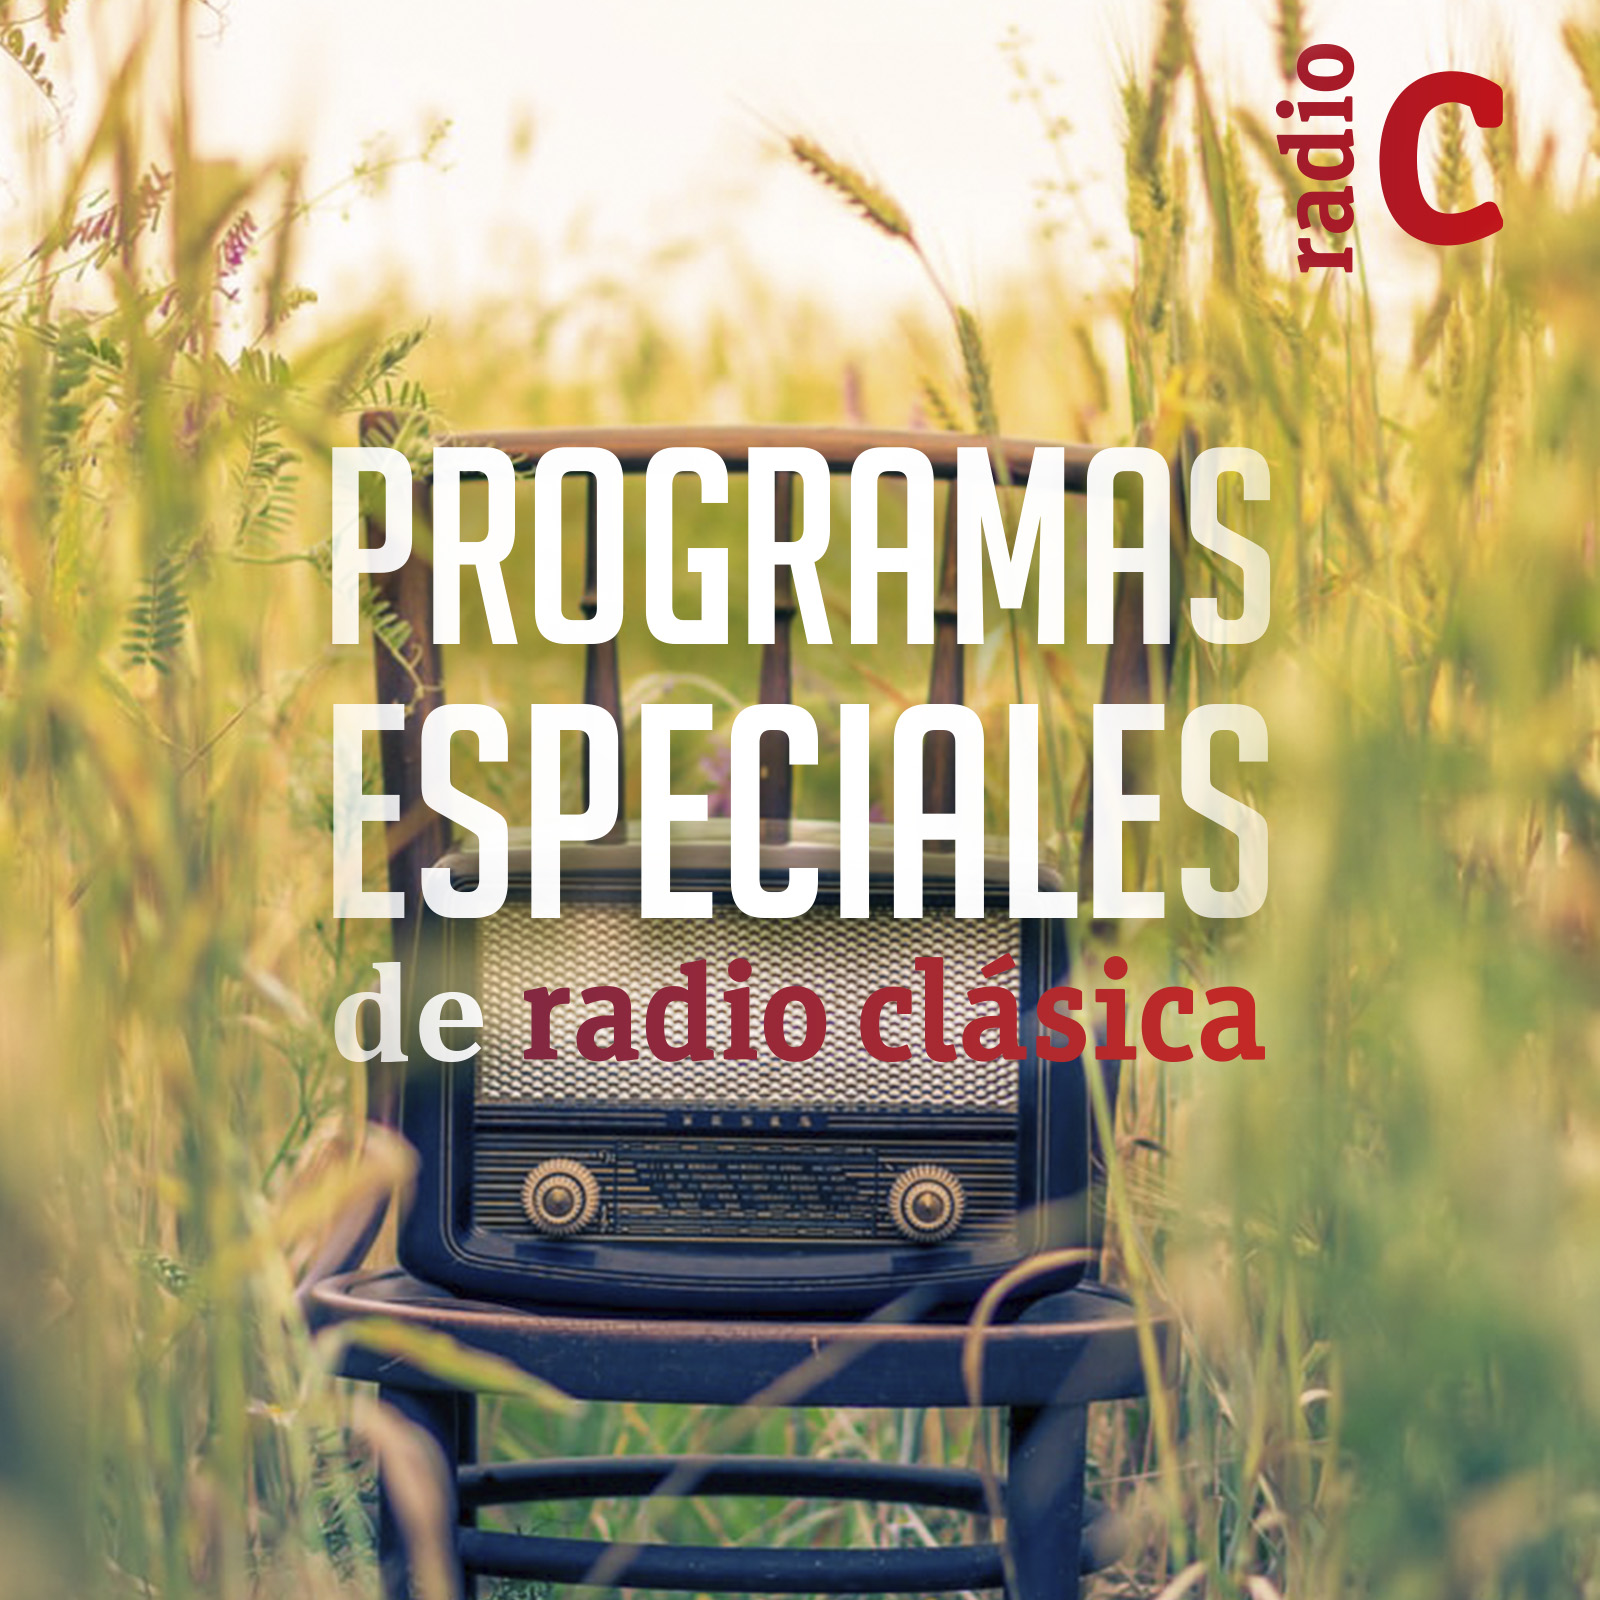 Programas especiales de Radio Clásica